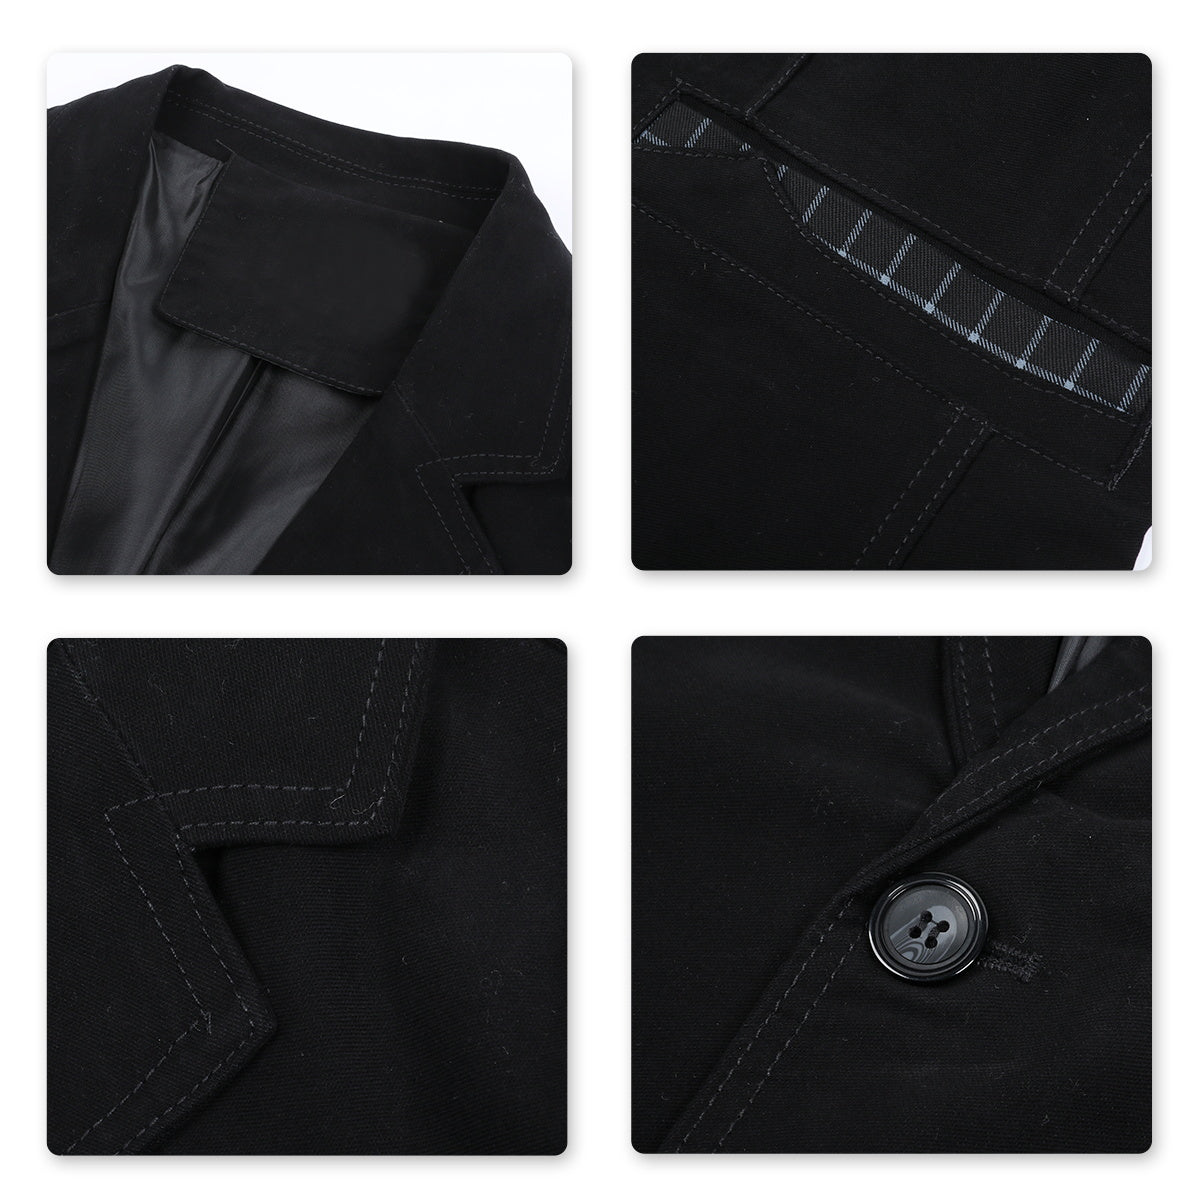 Mens Casual 2 Buttons Autumn Blazer Slim Fit Sport Coat Black